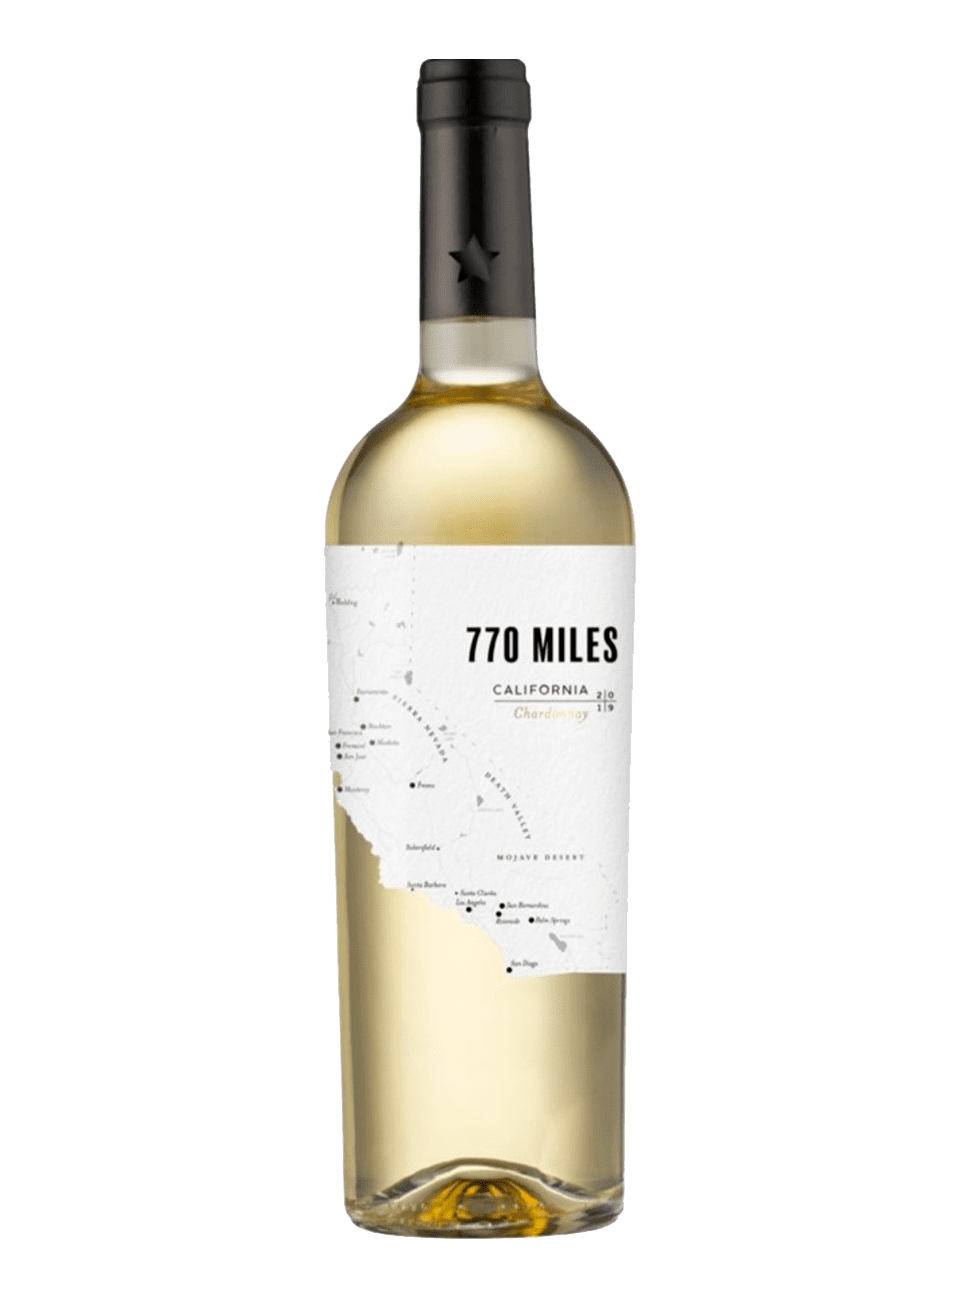 770 miles. Вино "770 Miles" Chardonnay. Вино 770 миль Шардоне. Вино 770 миль Шардоне белое. Вино 770 Miles California.